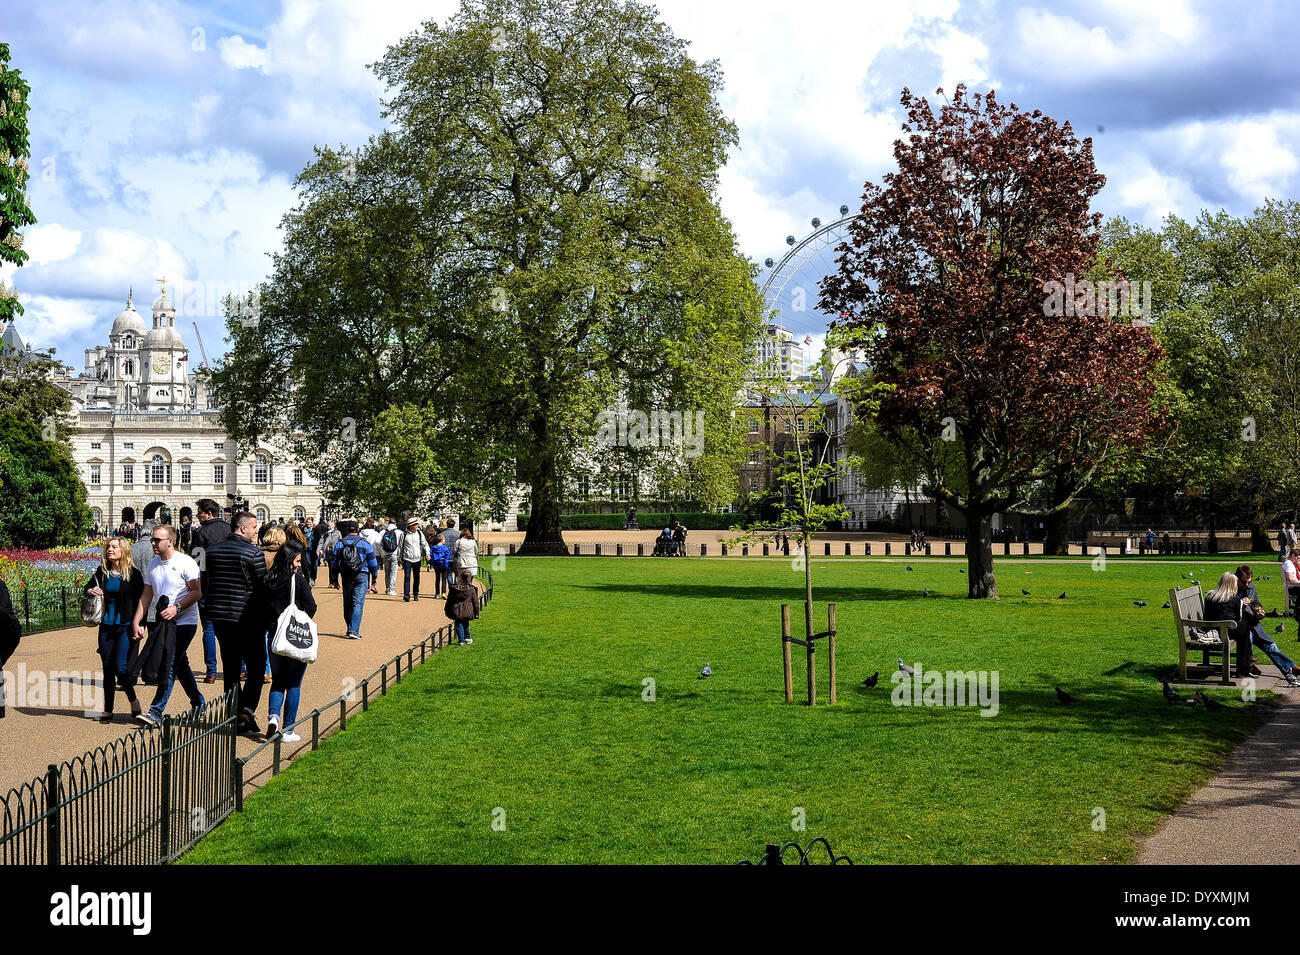 Menschen genießen Sie ein sonniges Wochenende in London, ein Spaziergang im Park und Blick auf die Tiere im St. James Park, London, UK, 26. April 2014 Stockfoto